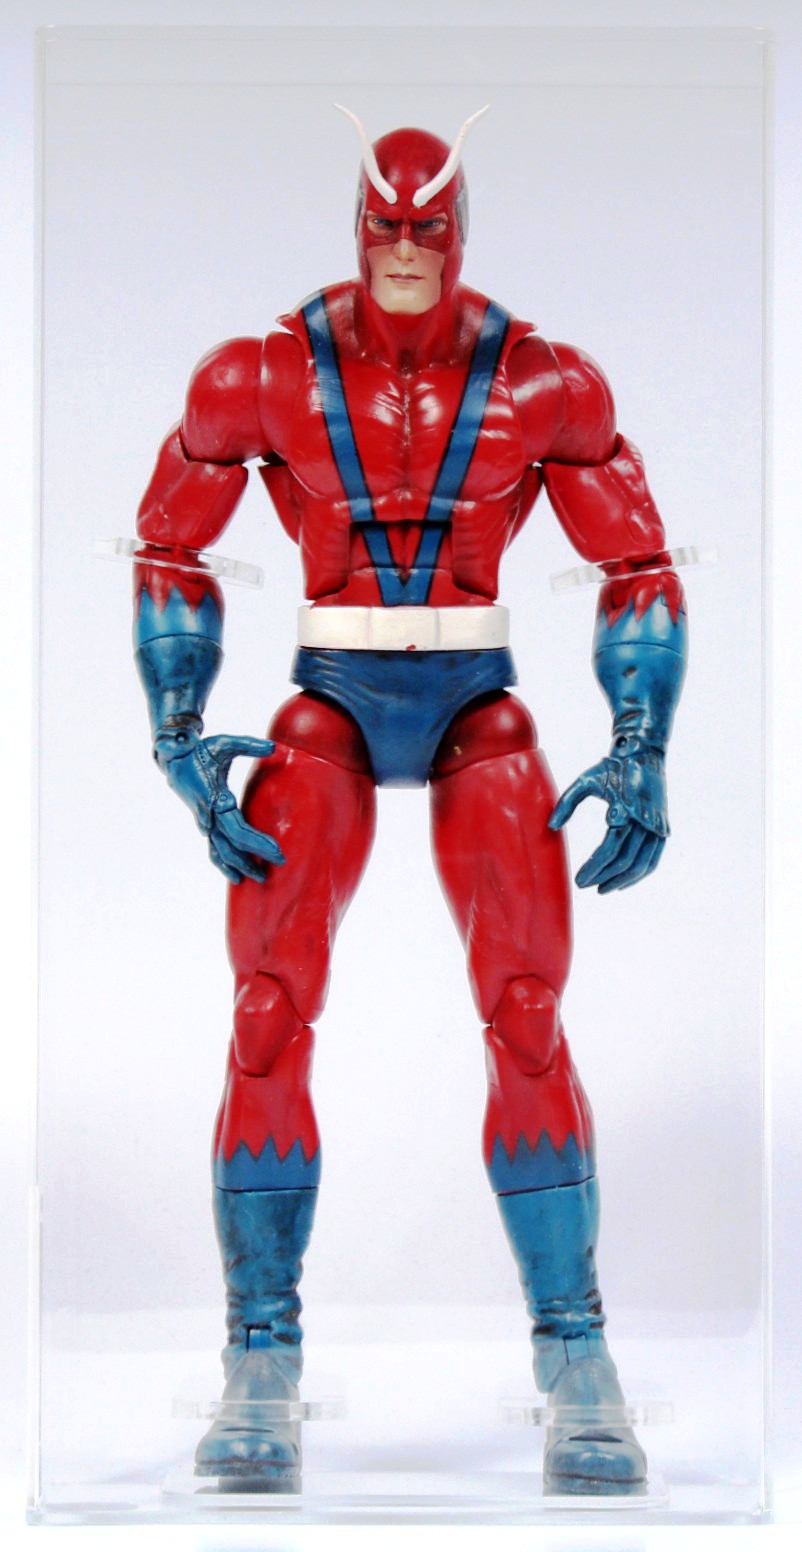 2006 Toybiz Marvel Legends BAF Series Loose Action Figure - Giant Man